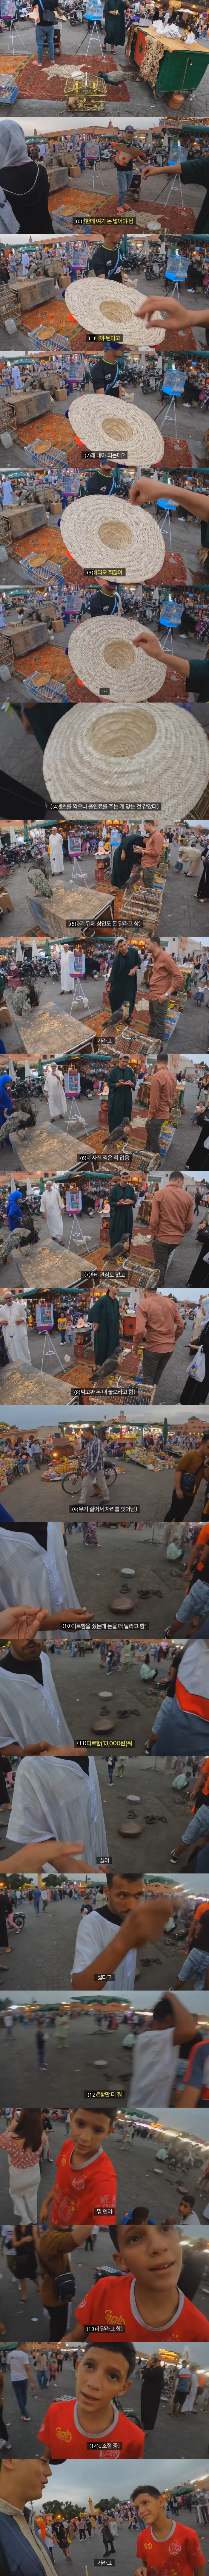 モロッコに対する偏見があったという旅行YouTuber